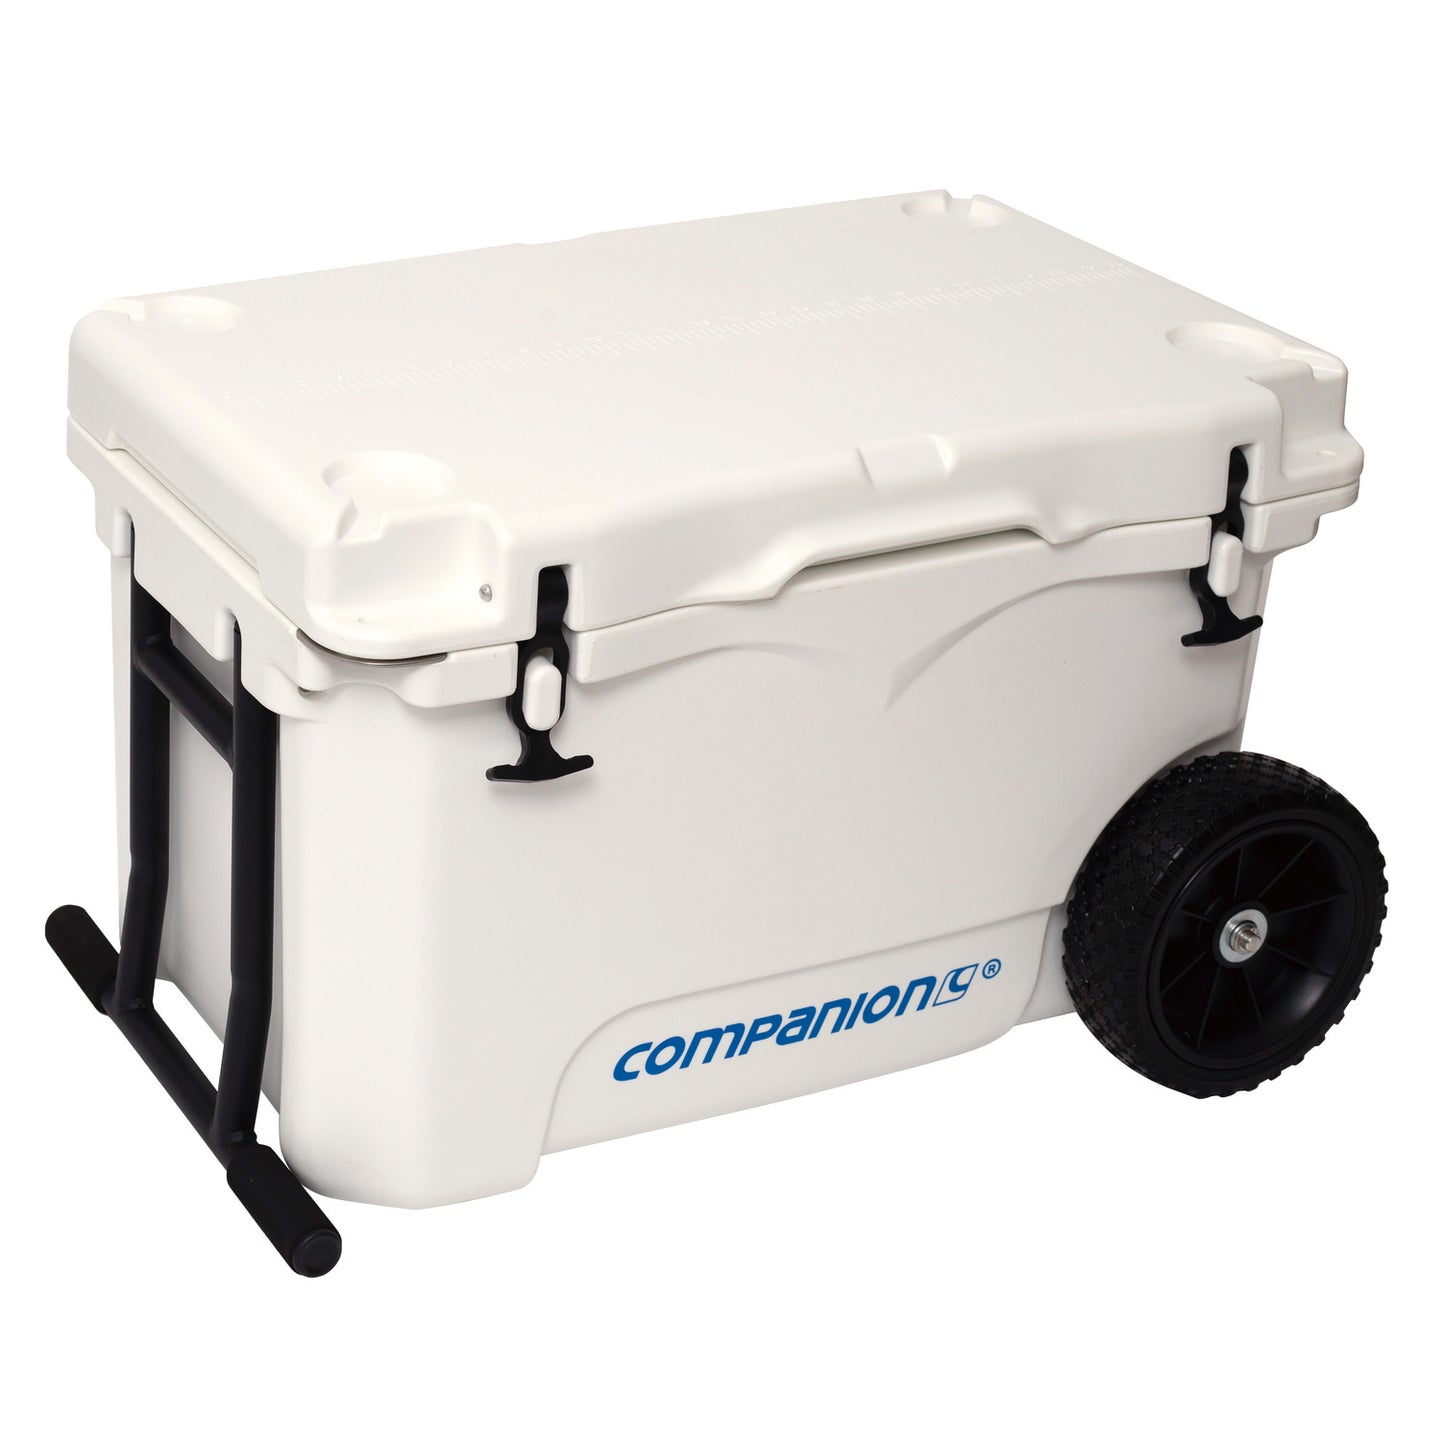 Companion Wheeled Ice Box - 50L